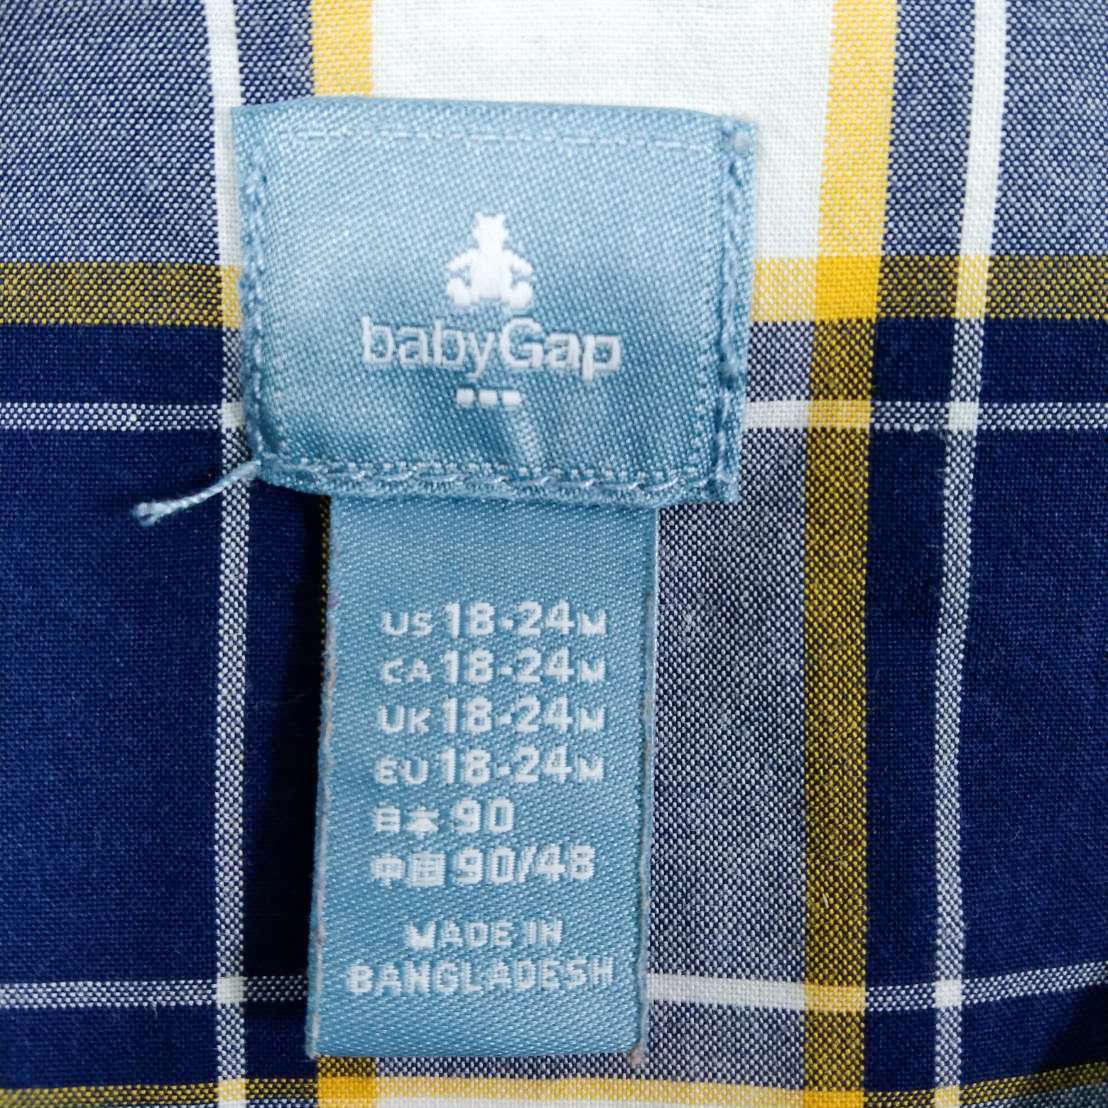 bany Gap เสื้อเชิ้ตแขนยาวลายสก๊อตน้ำเงิน-ขาวไซส์18-24 